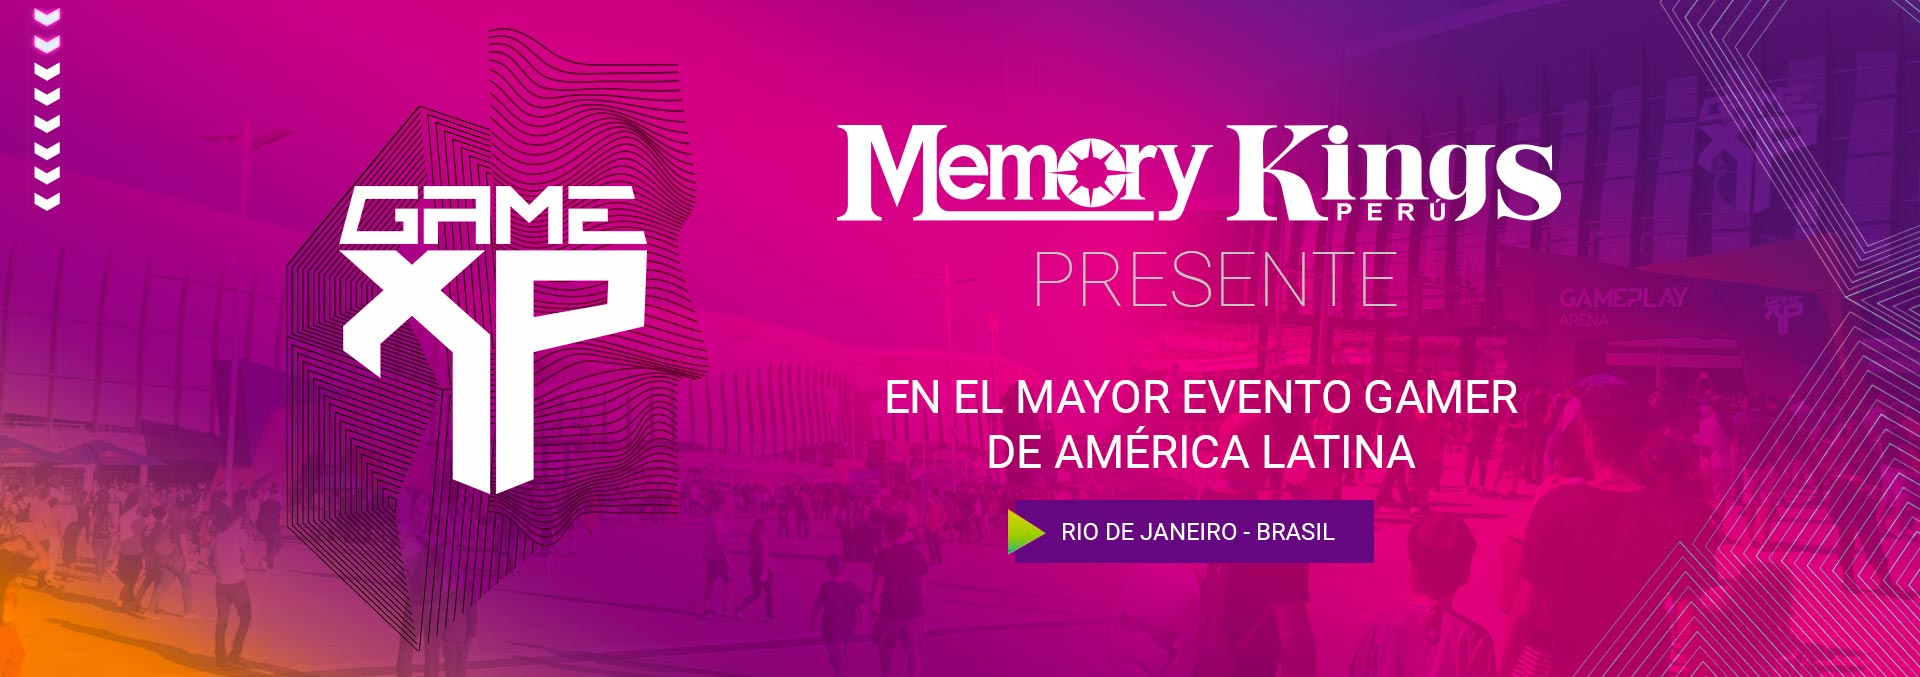 SEGUNDO ESPECIAL - MEMORY KINGS EN EL EVENTO GAMER MAS GRANDE DEL MUNDO GAME XP - RIO DE JANEIRO BRASIL